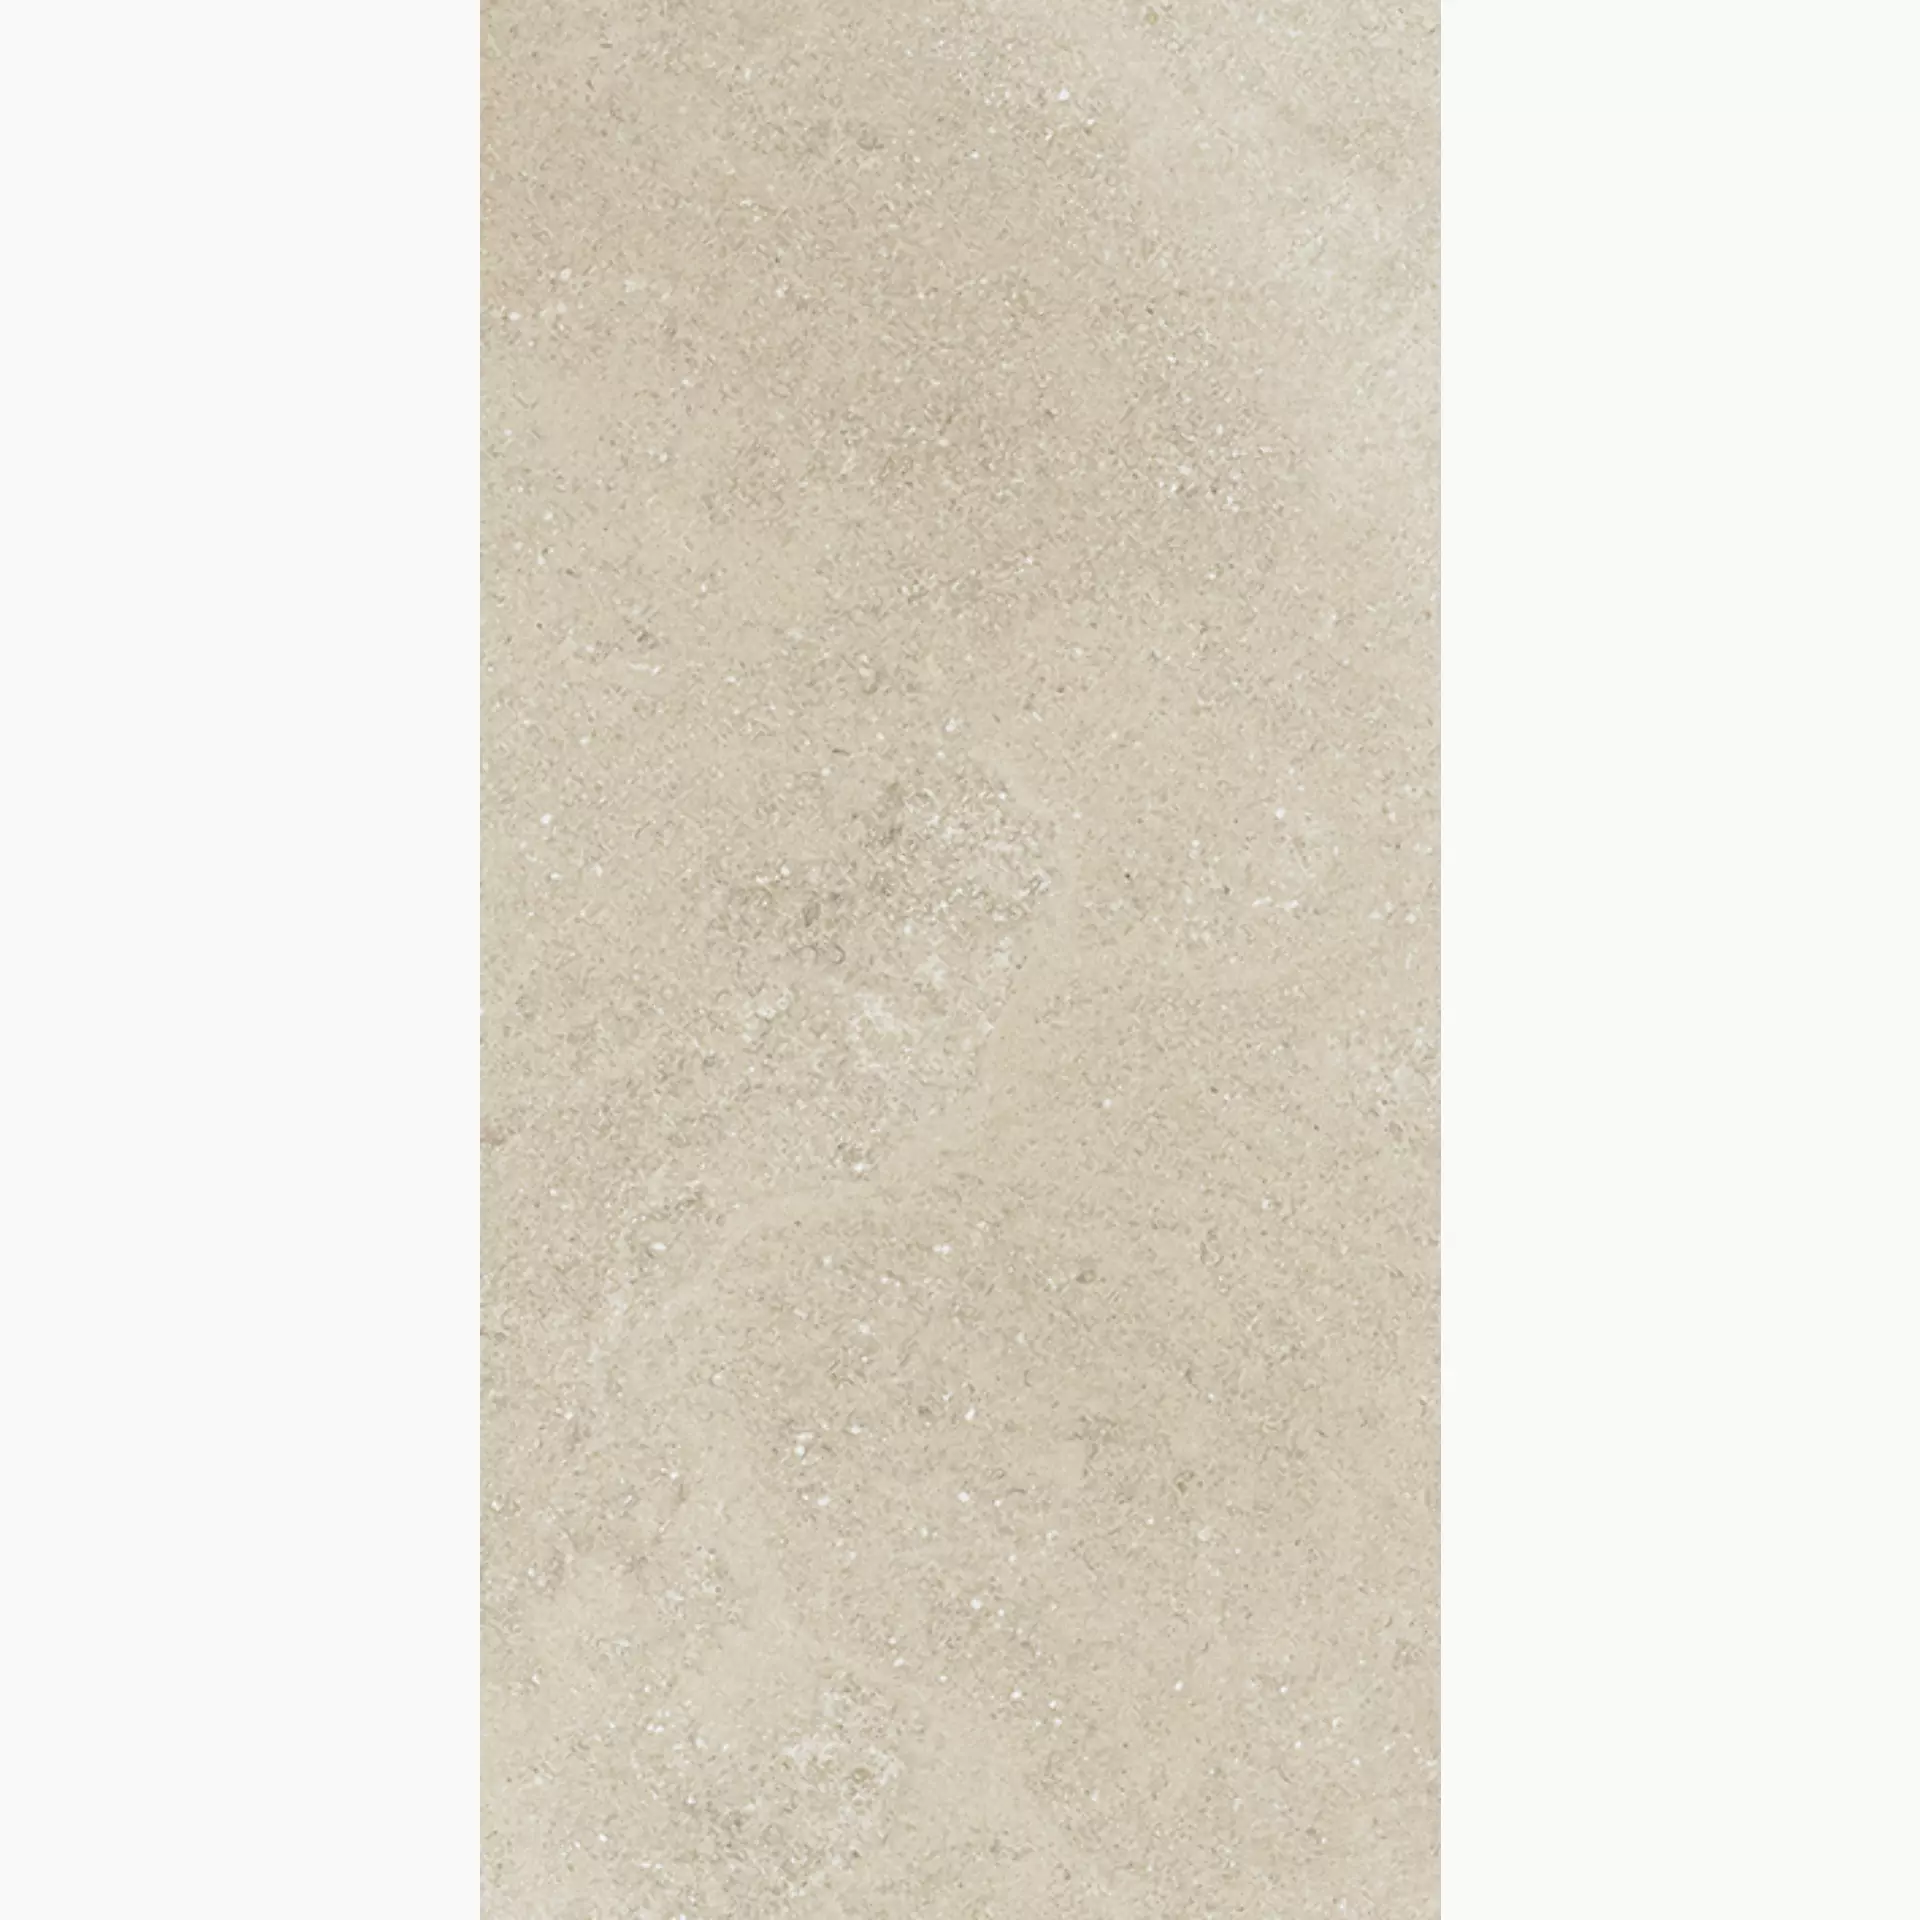 Wandfliese,Bodenfliese Villeroy & Boch Hudson Sand Rough – Polished Sand 2576-SD2L geschliffen 30x60cm rektifiziert 10mm